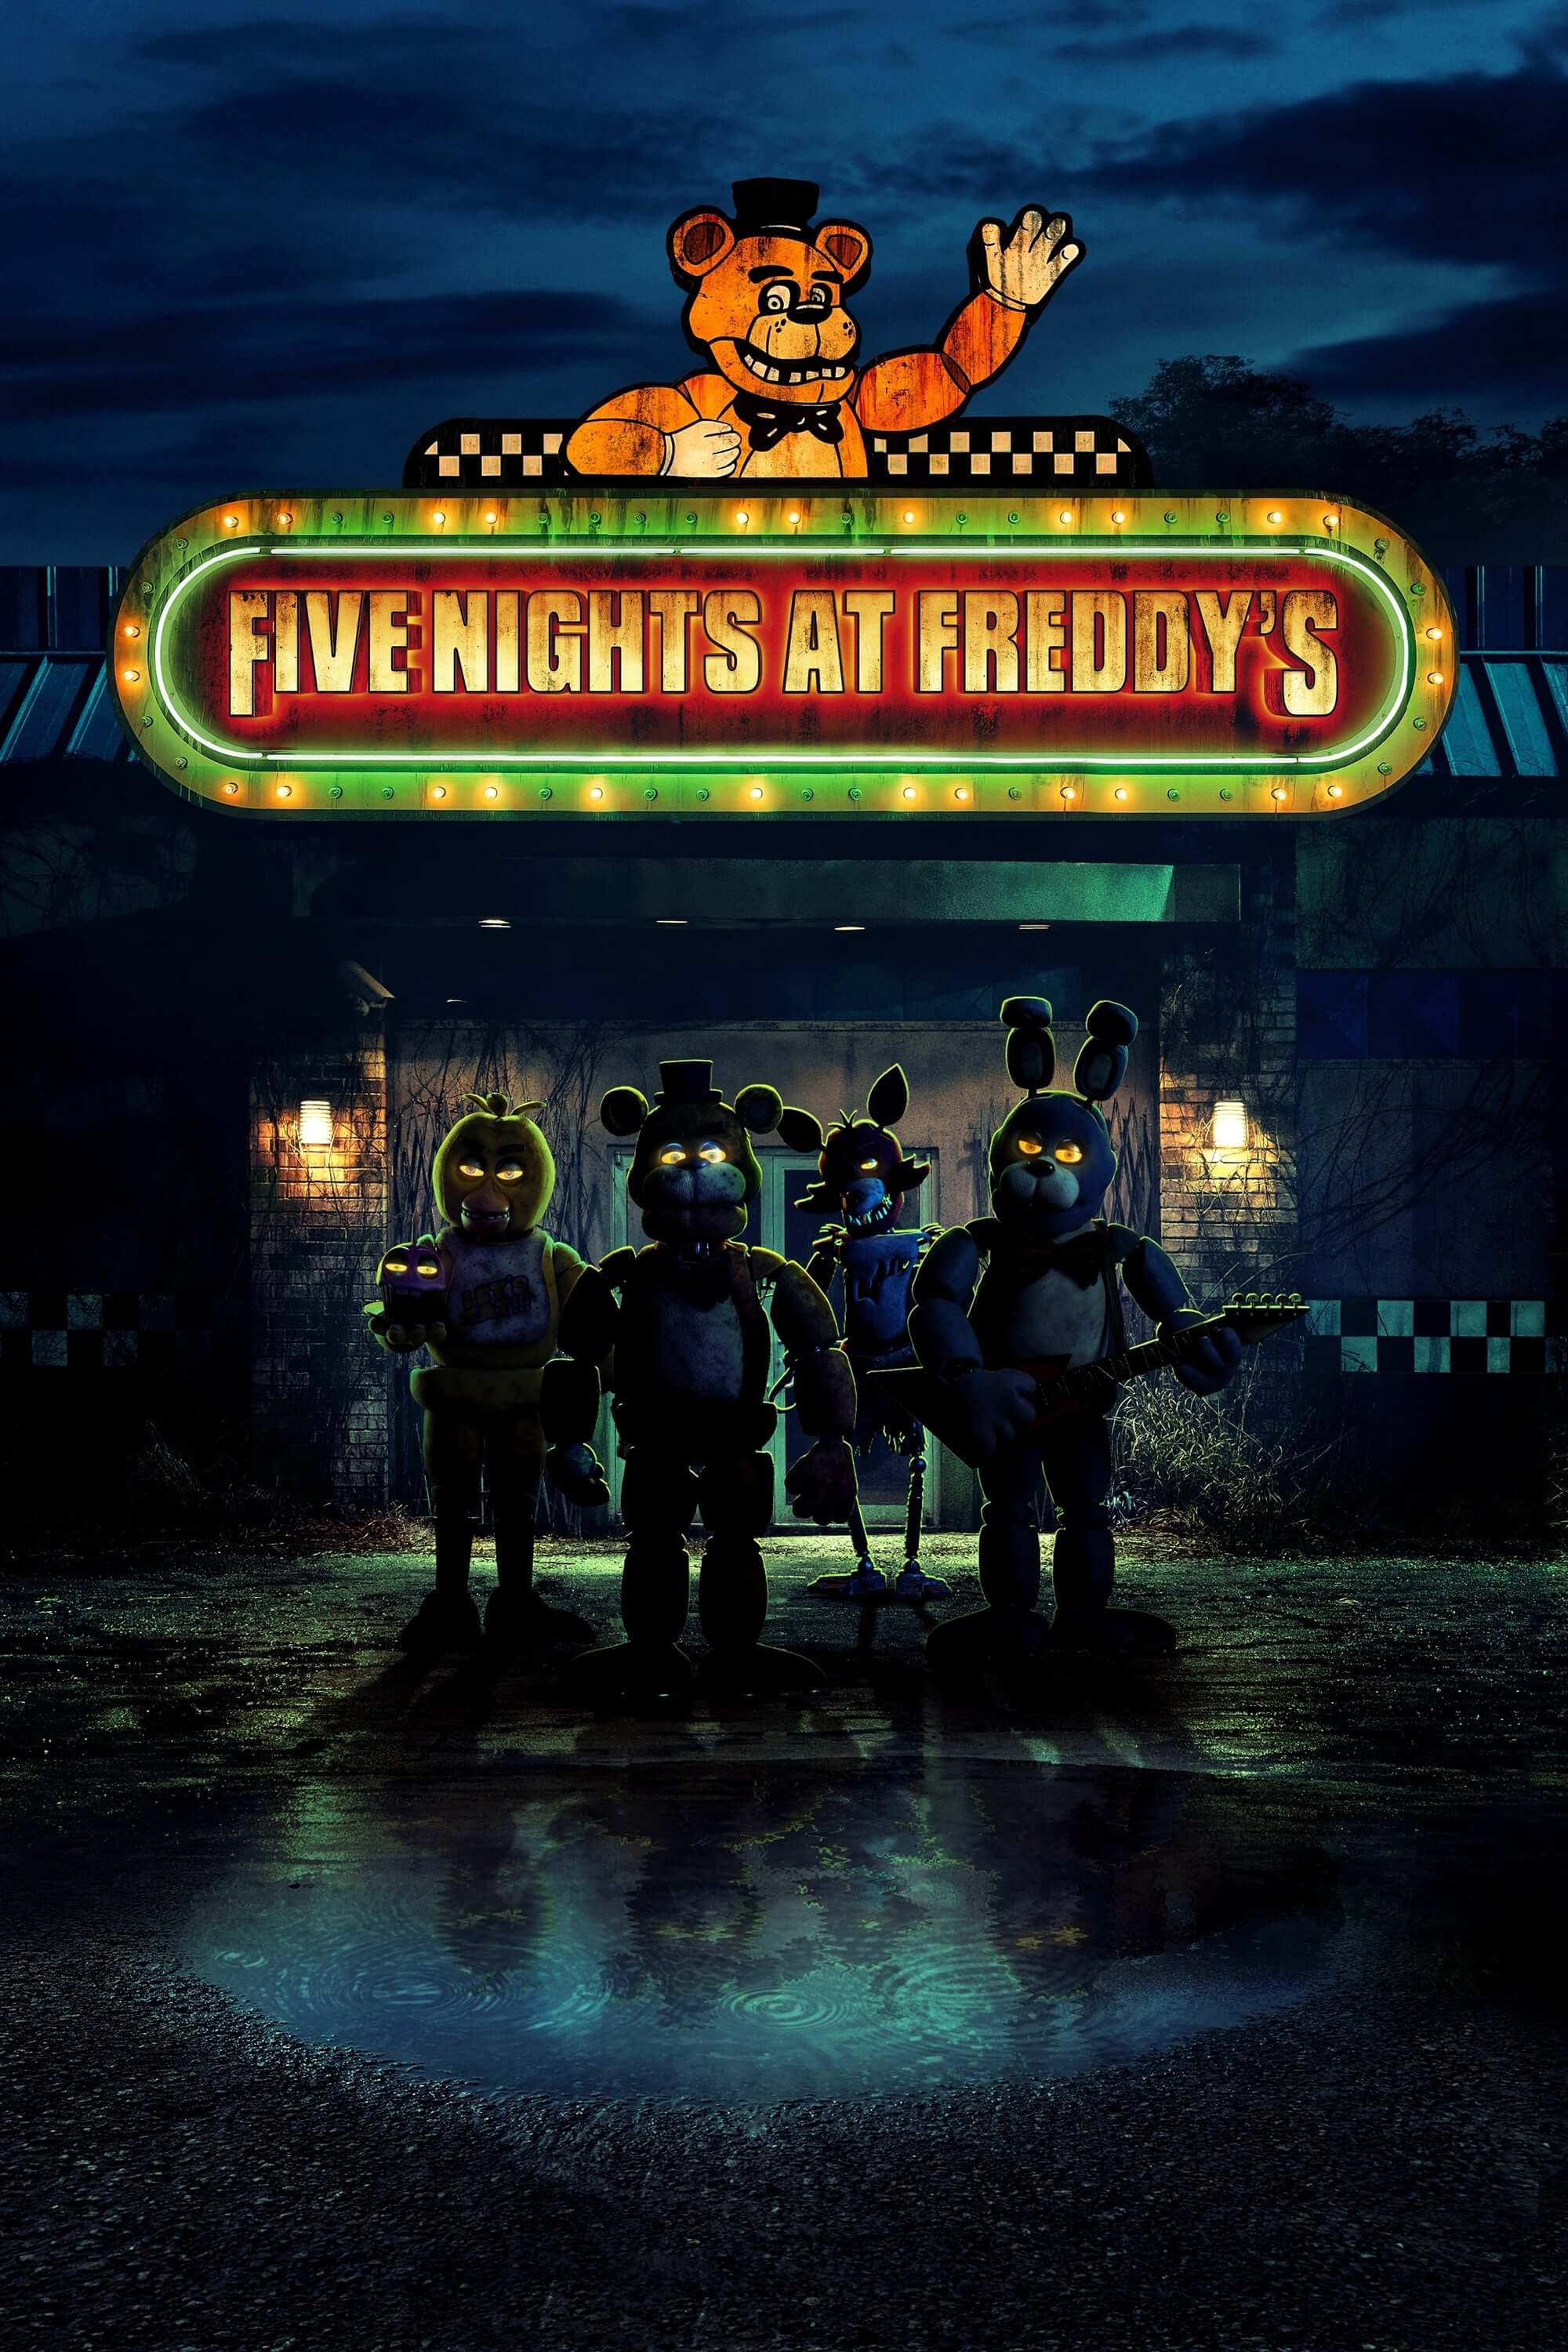 Freddy'nin Pizza Dükkanında Beş Gece